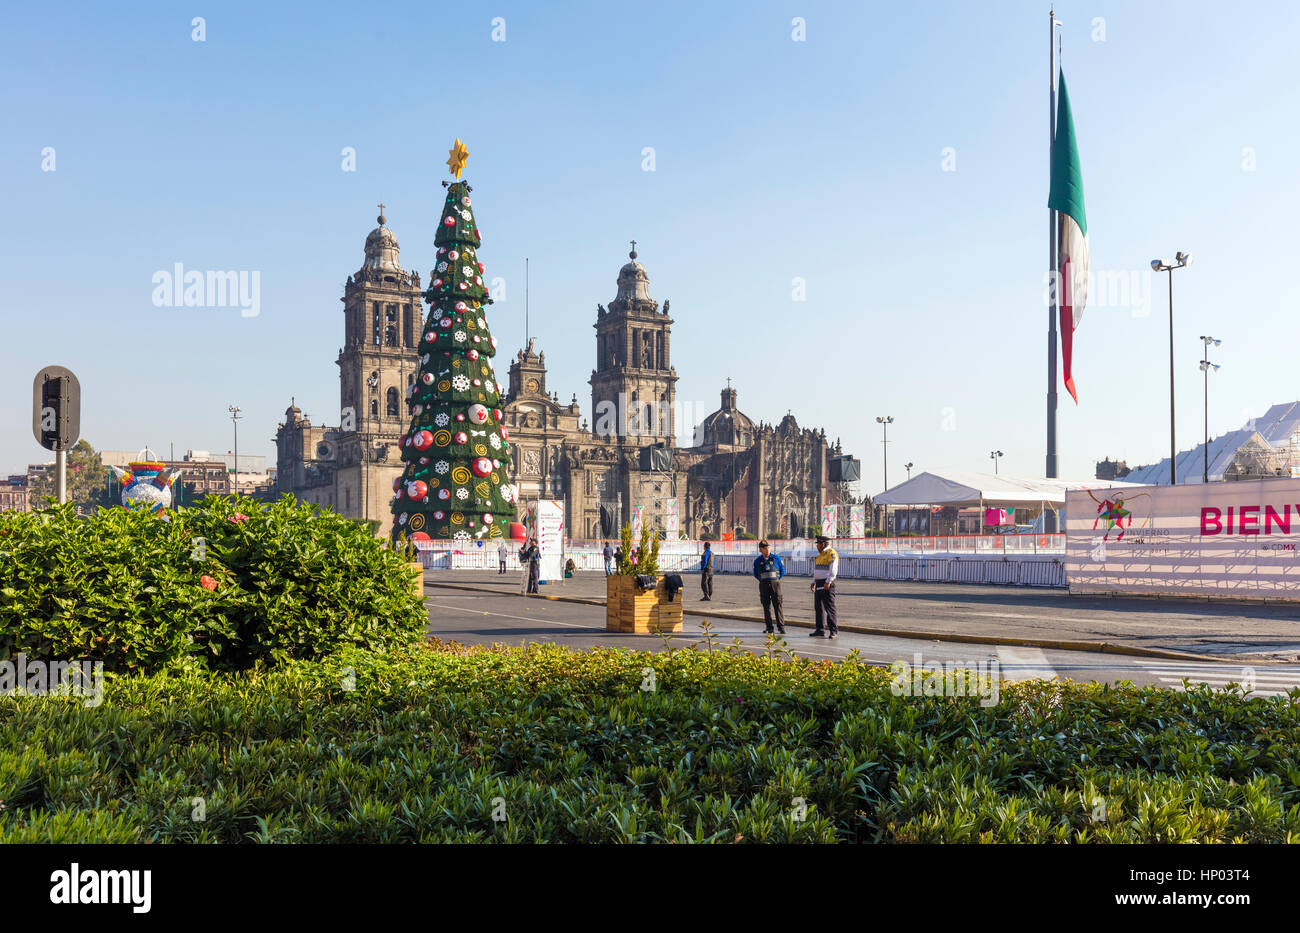 Stock Photo - Metropolitan Cathedral, the largest church in Latin America, Zocalo, Plaza de la Constitucion, Mexico City, Mexico Stock Photo